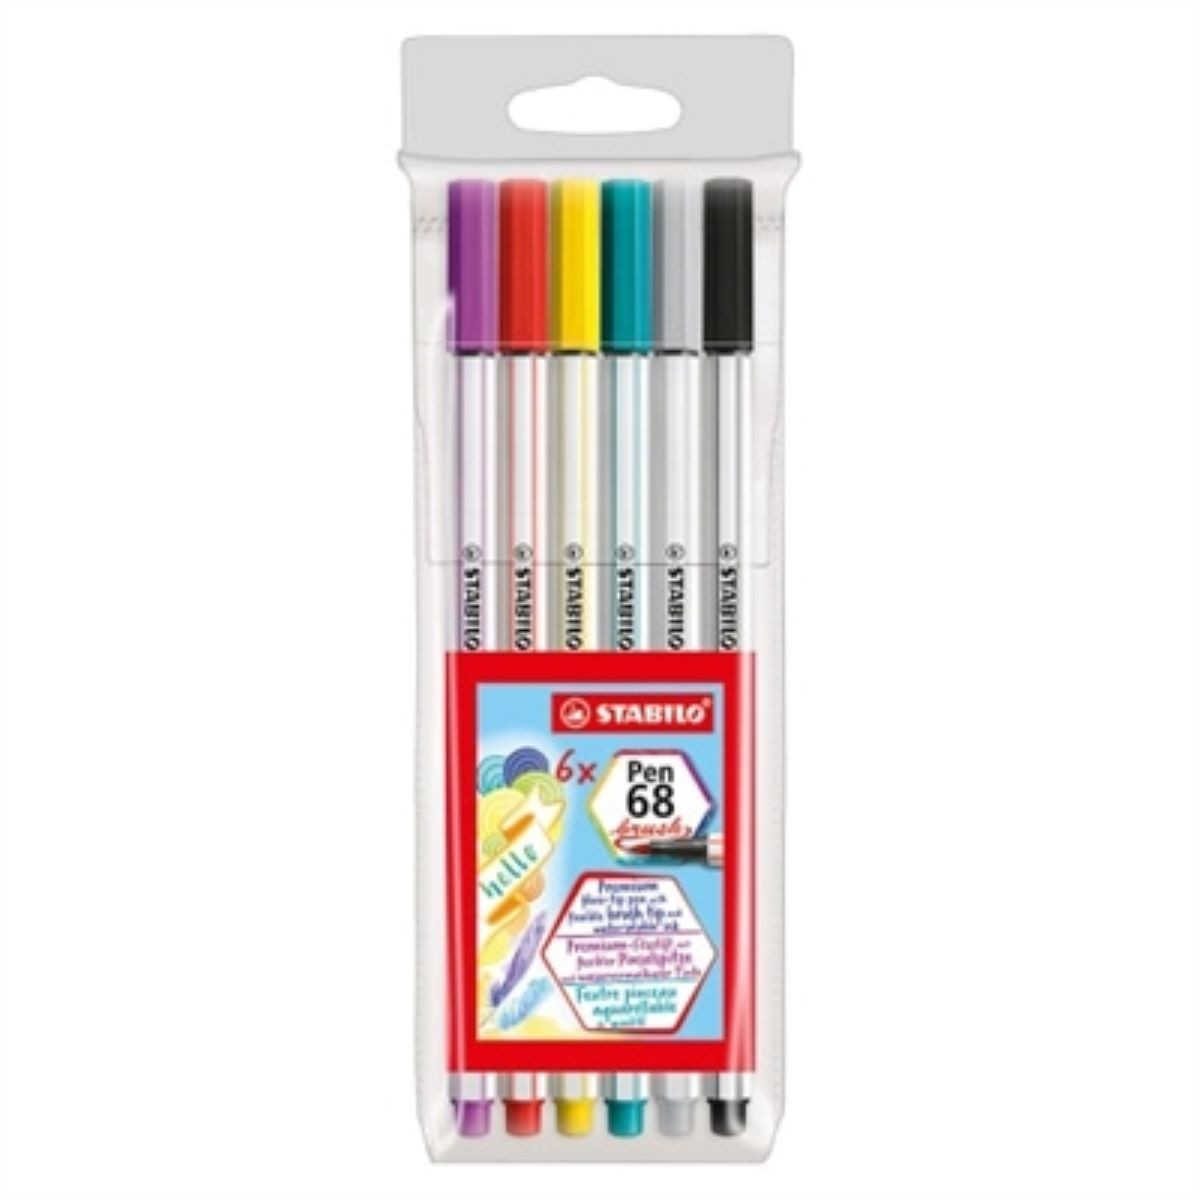 Caneta Brush Stabilo Pen 68 com 06 cores 